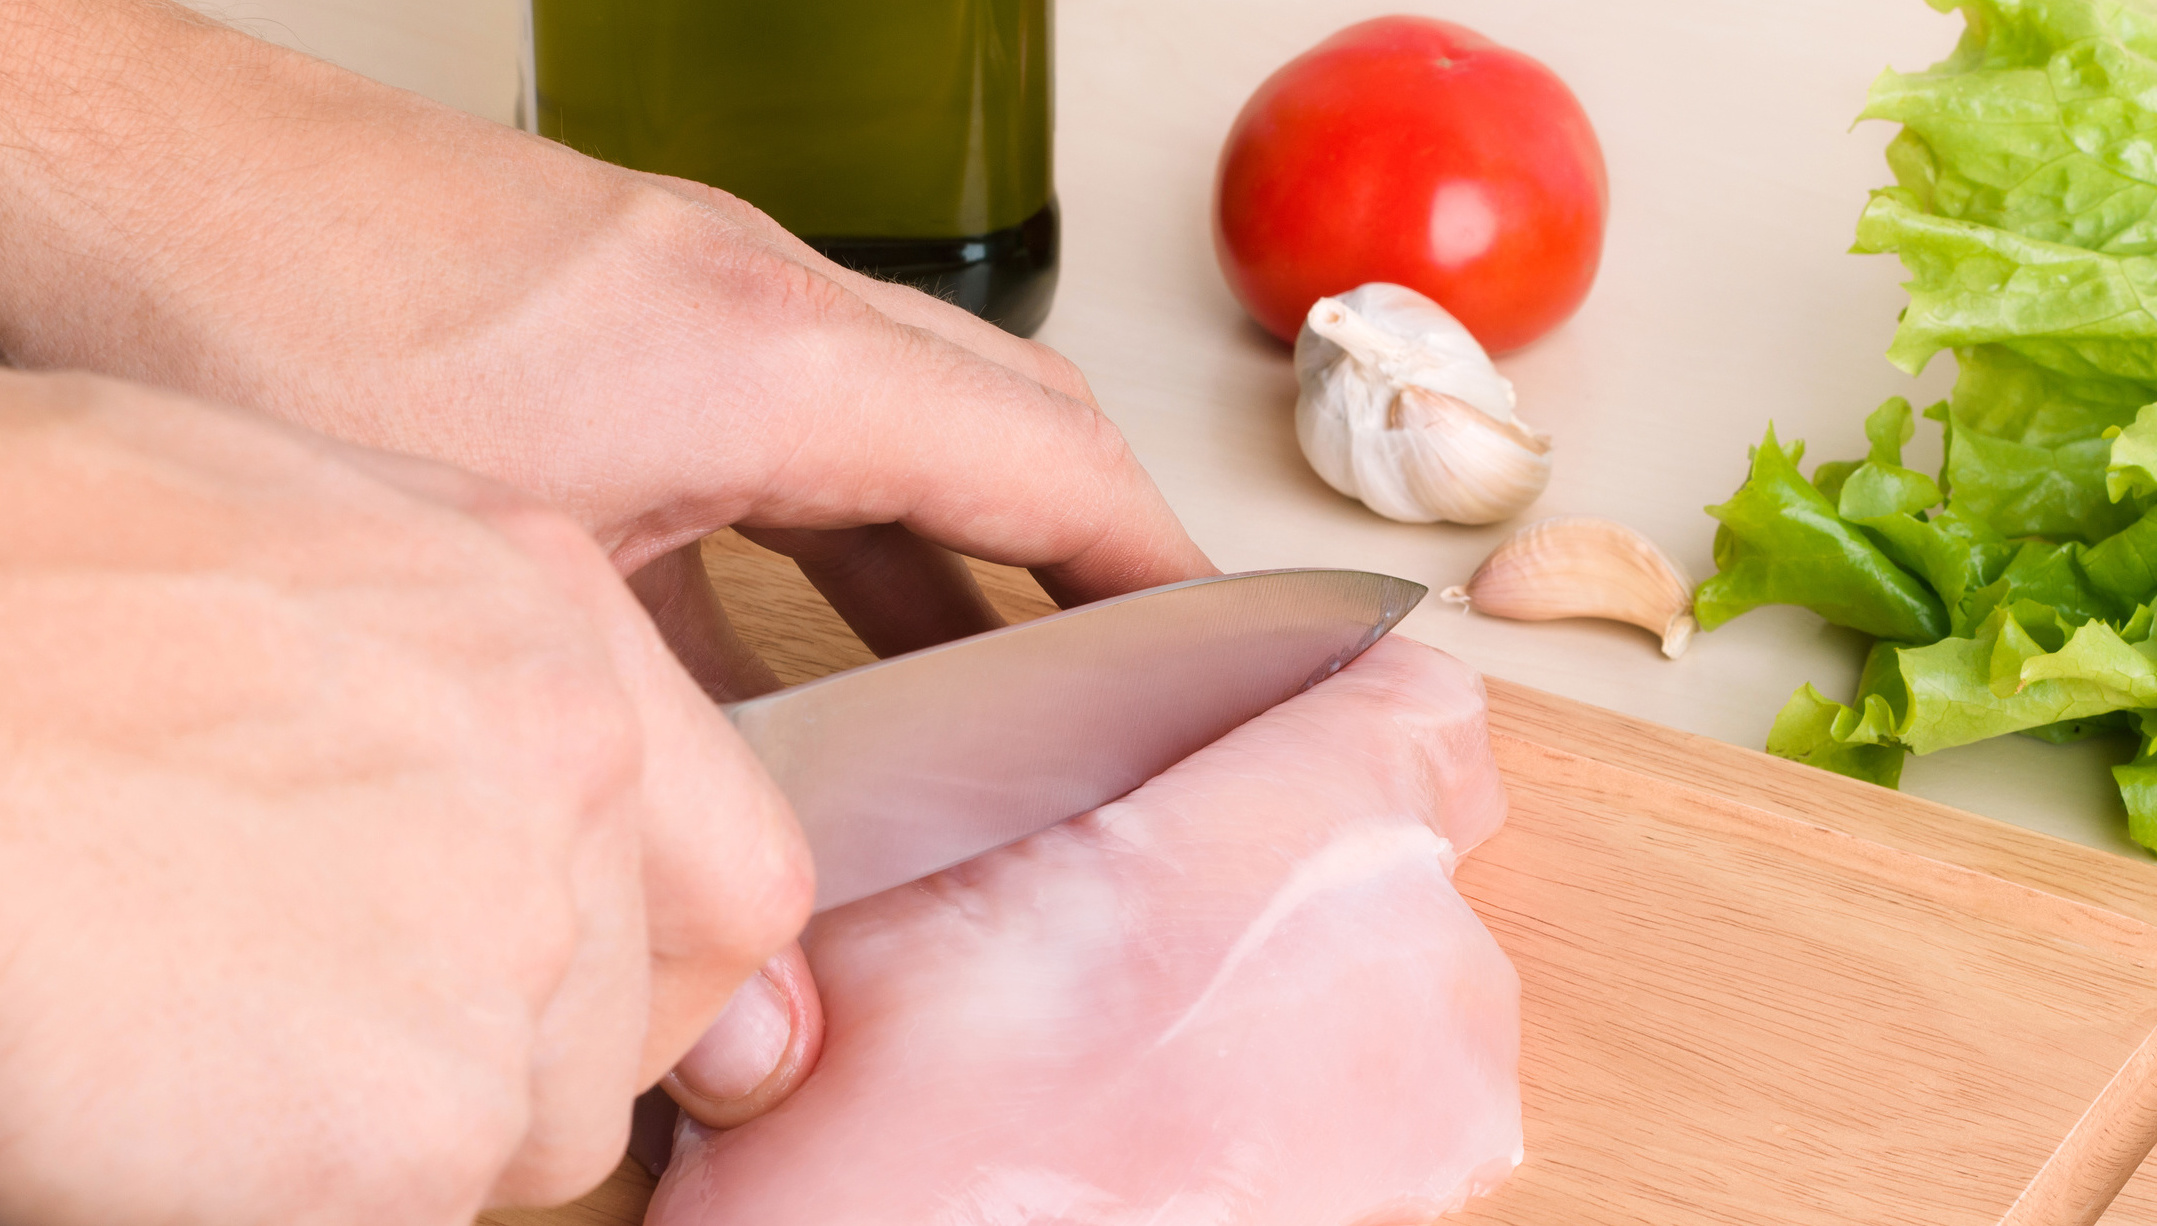 Das Bild zeigt eine Hand, die Hähnchenfleisch mit einem Messer zerschneidet.